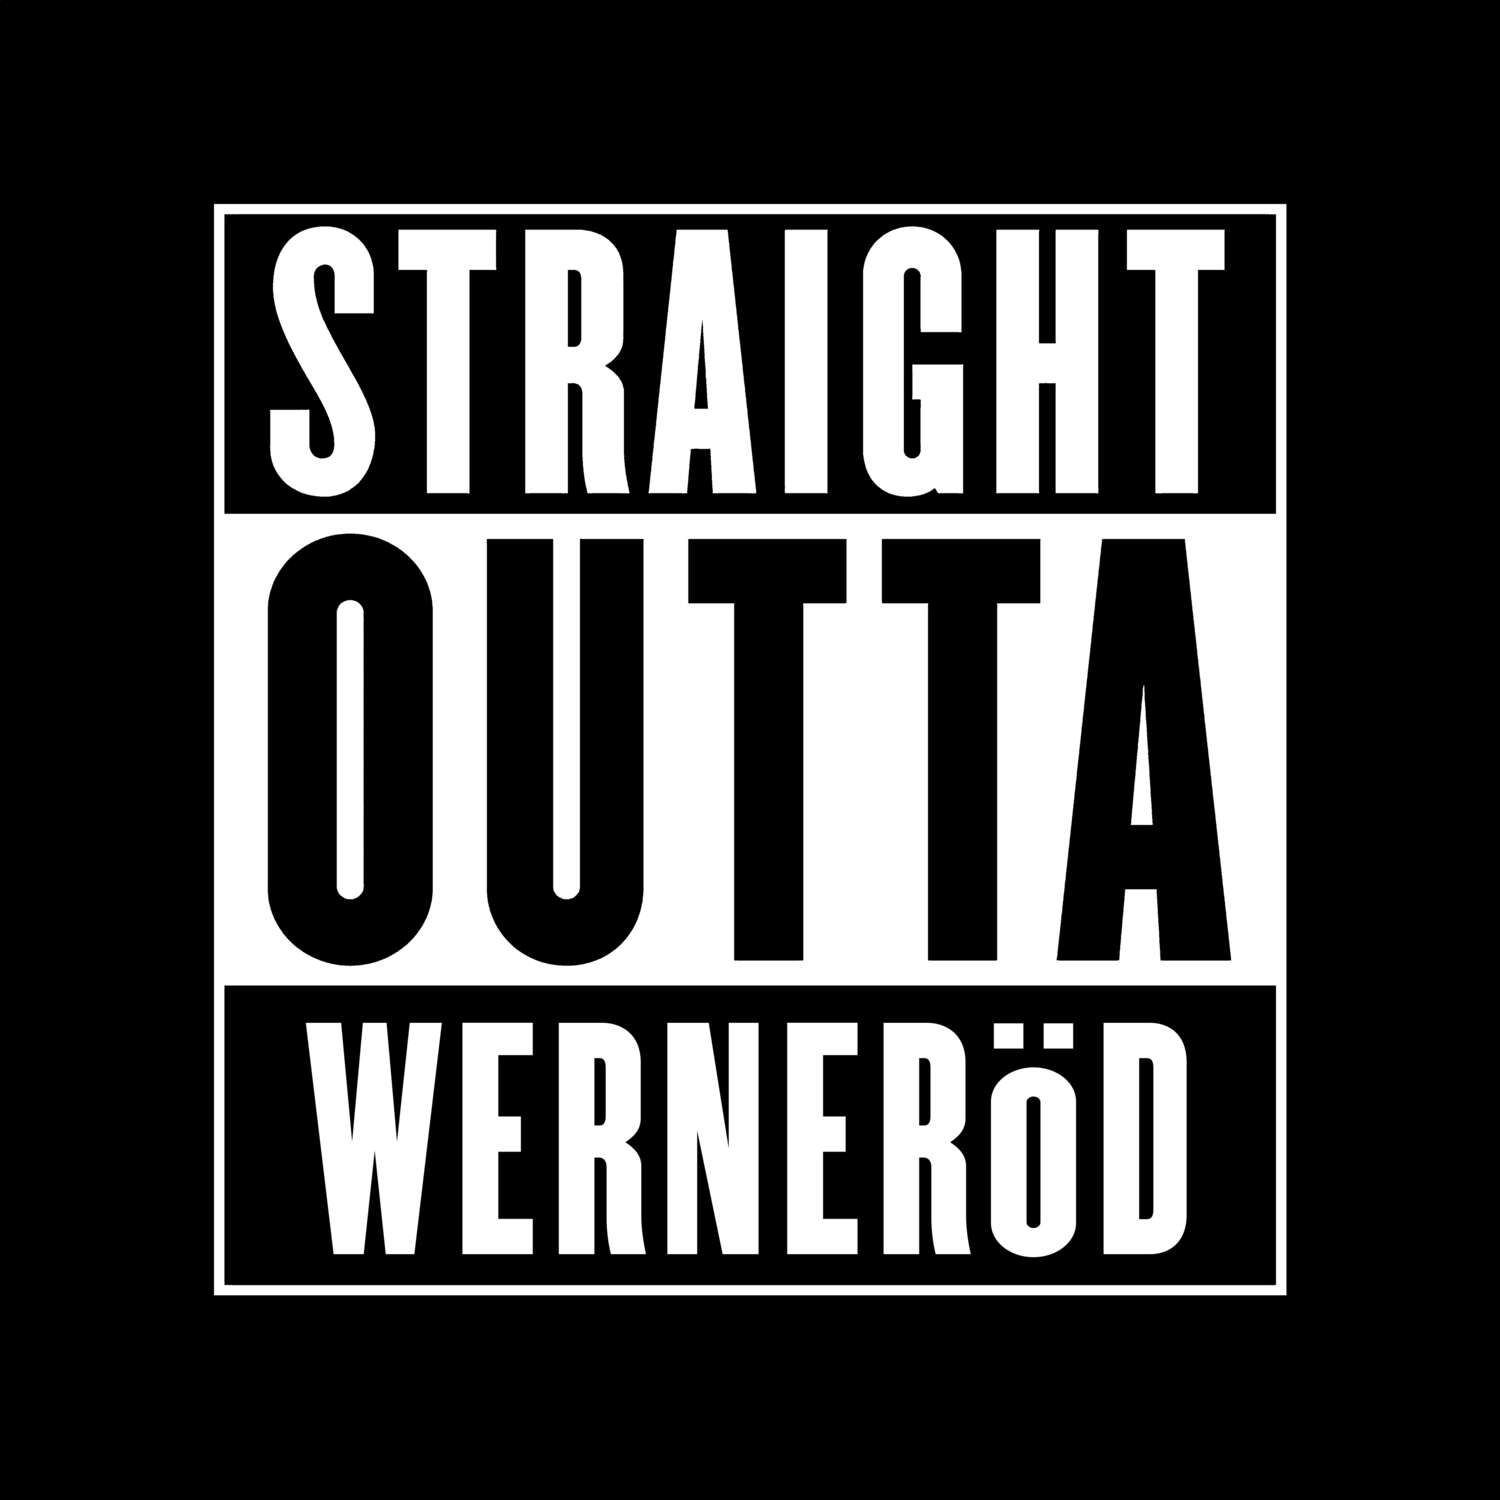 Werneröd T-Shirt »Straight Outta«